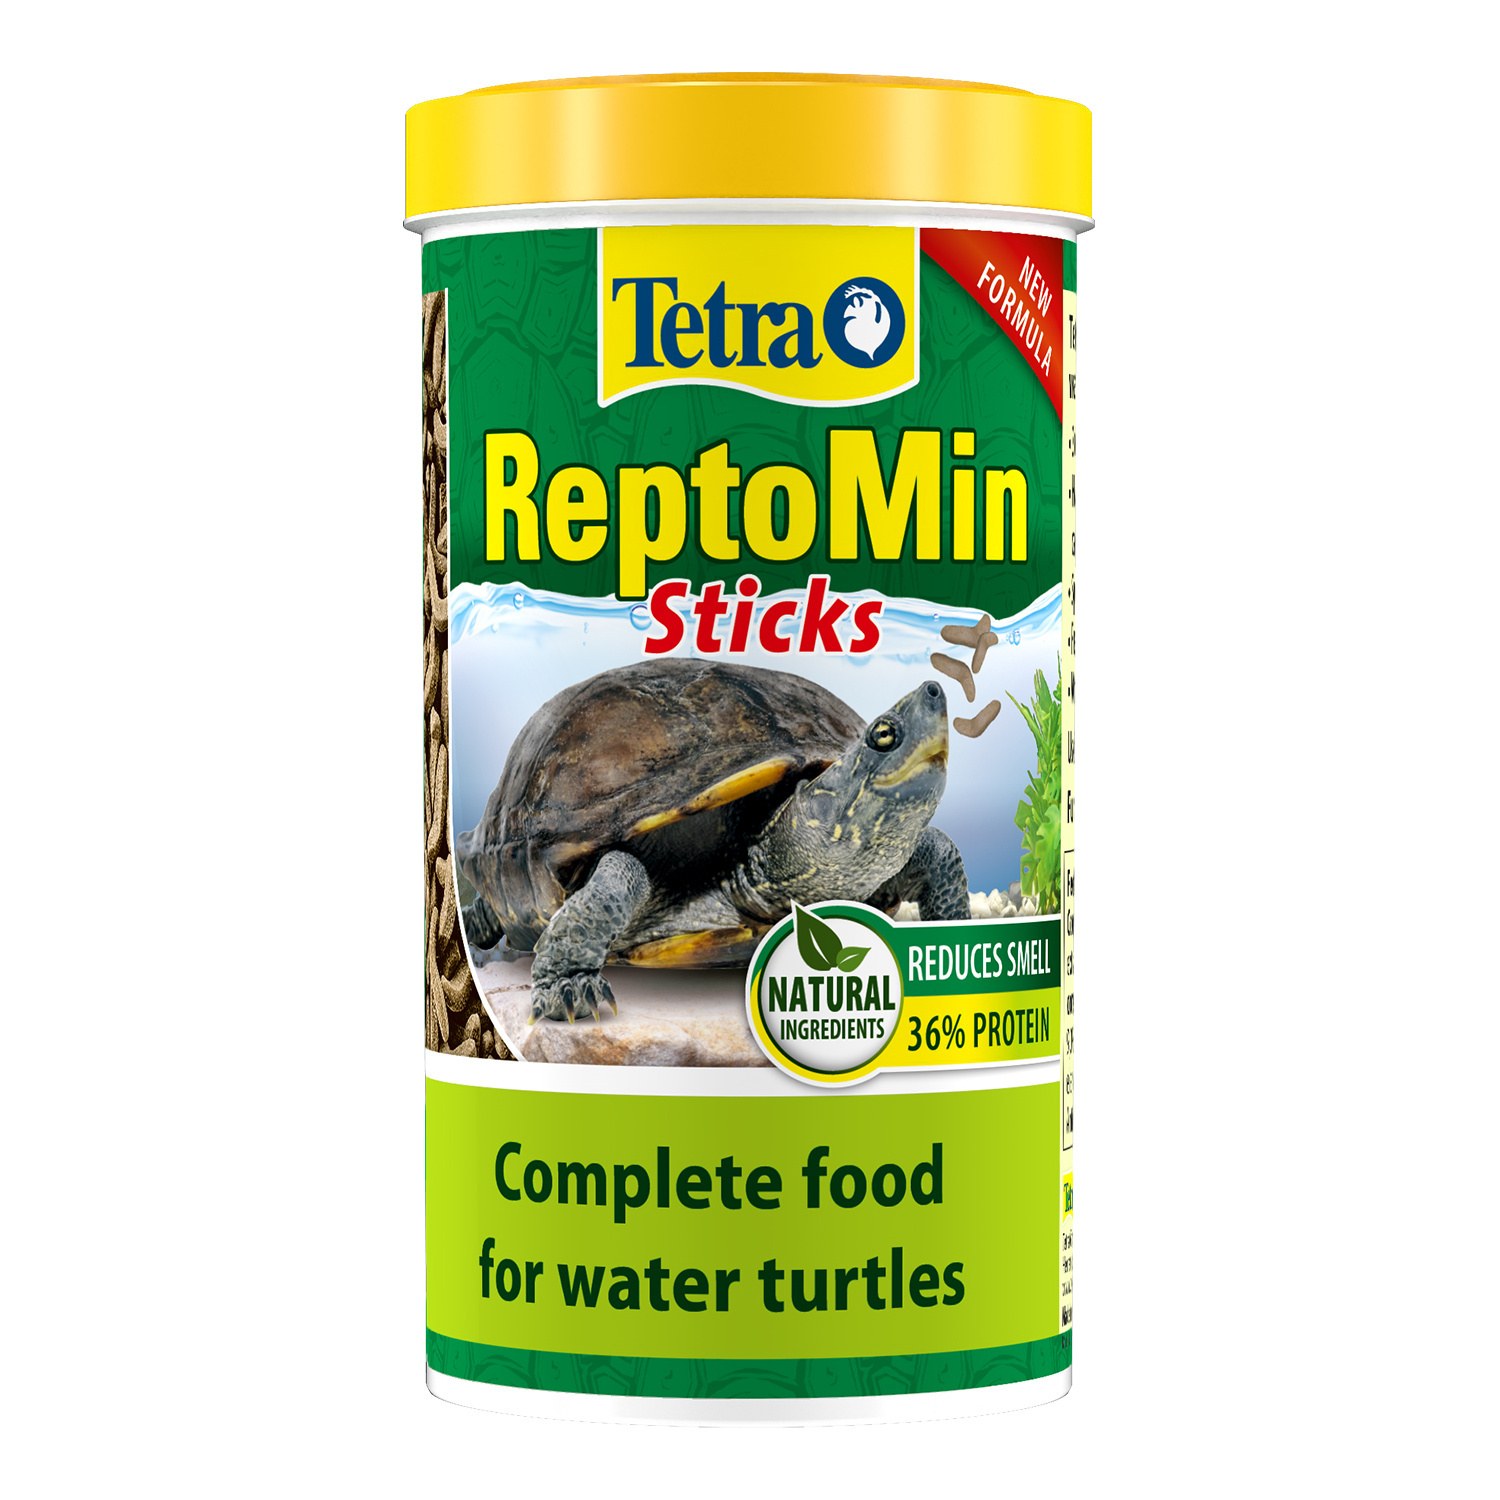 Tetra (корма) Tetra (корма) корм для водных черепах ReptoМin (130 г) tetra корма tetra корма натуральное лакомство для водных черепах кузнечики 28 г